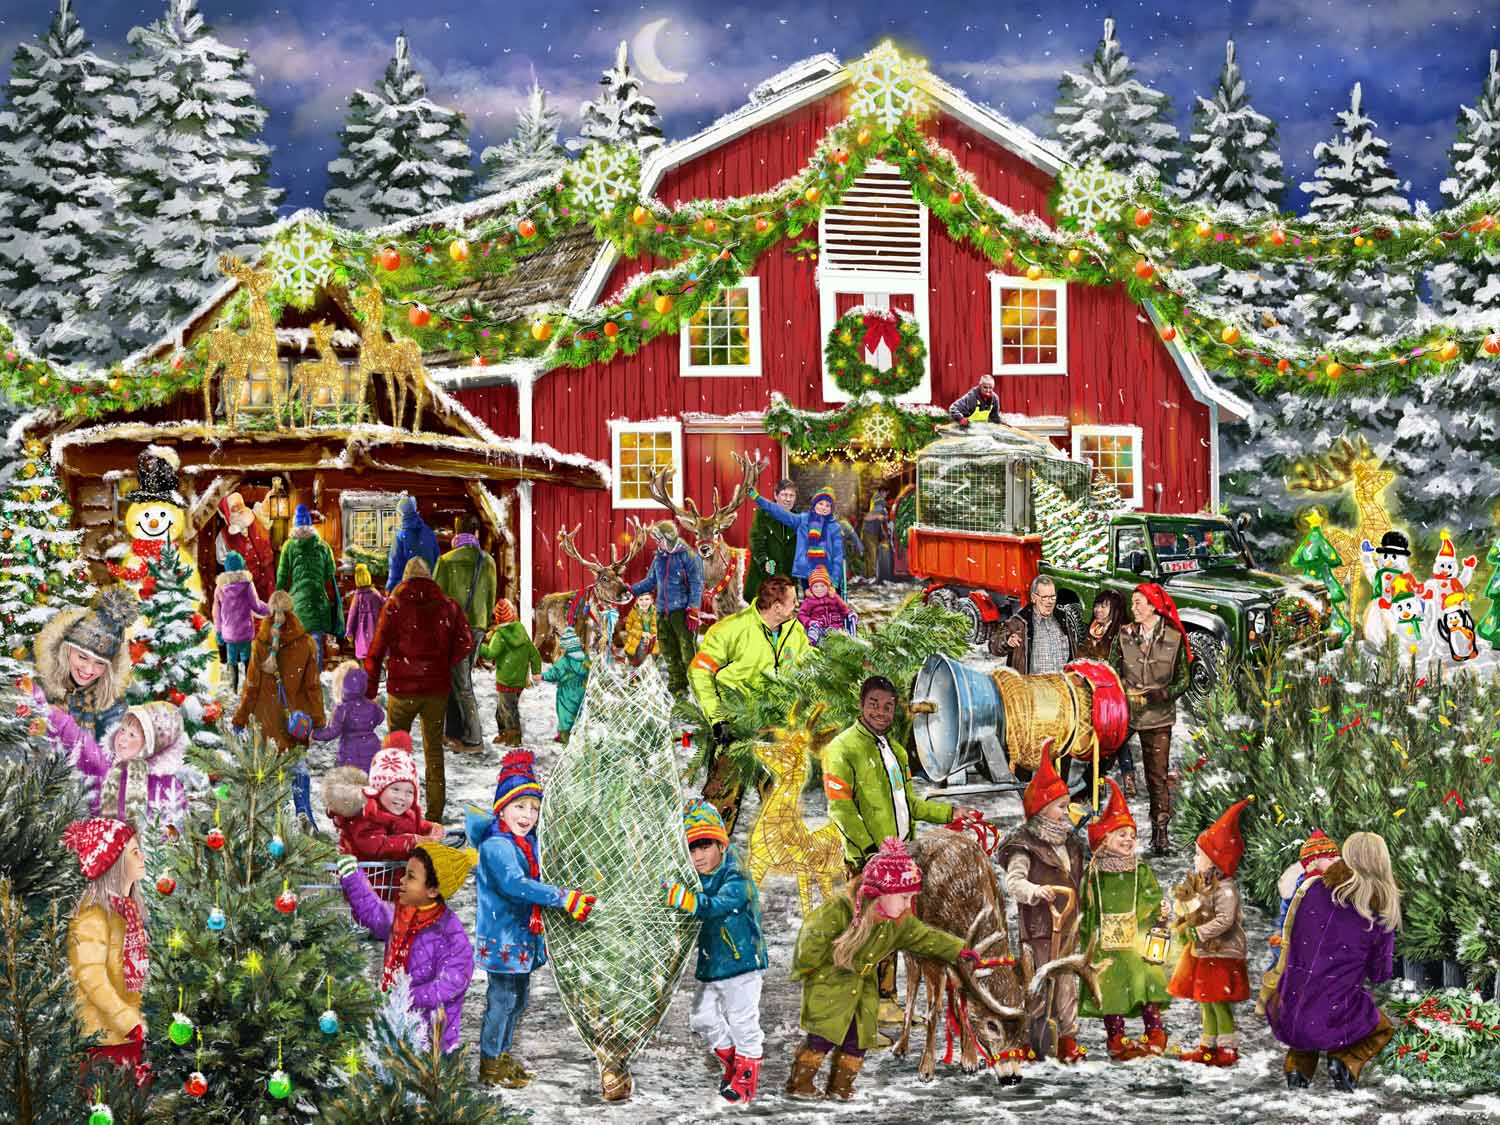 Christmas Barn